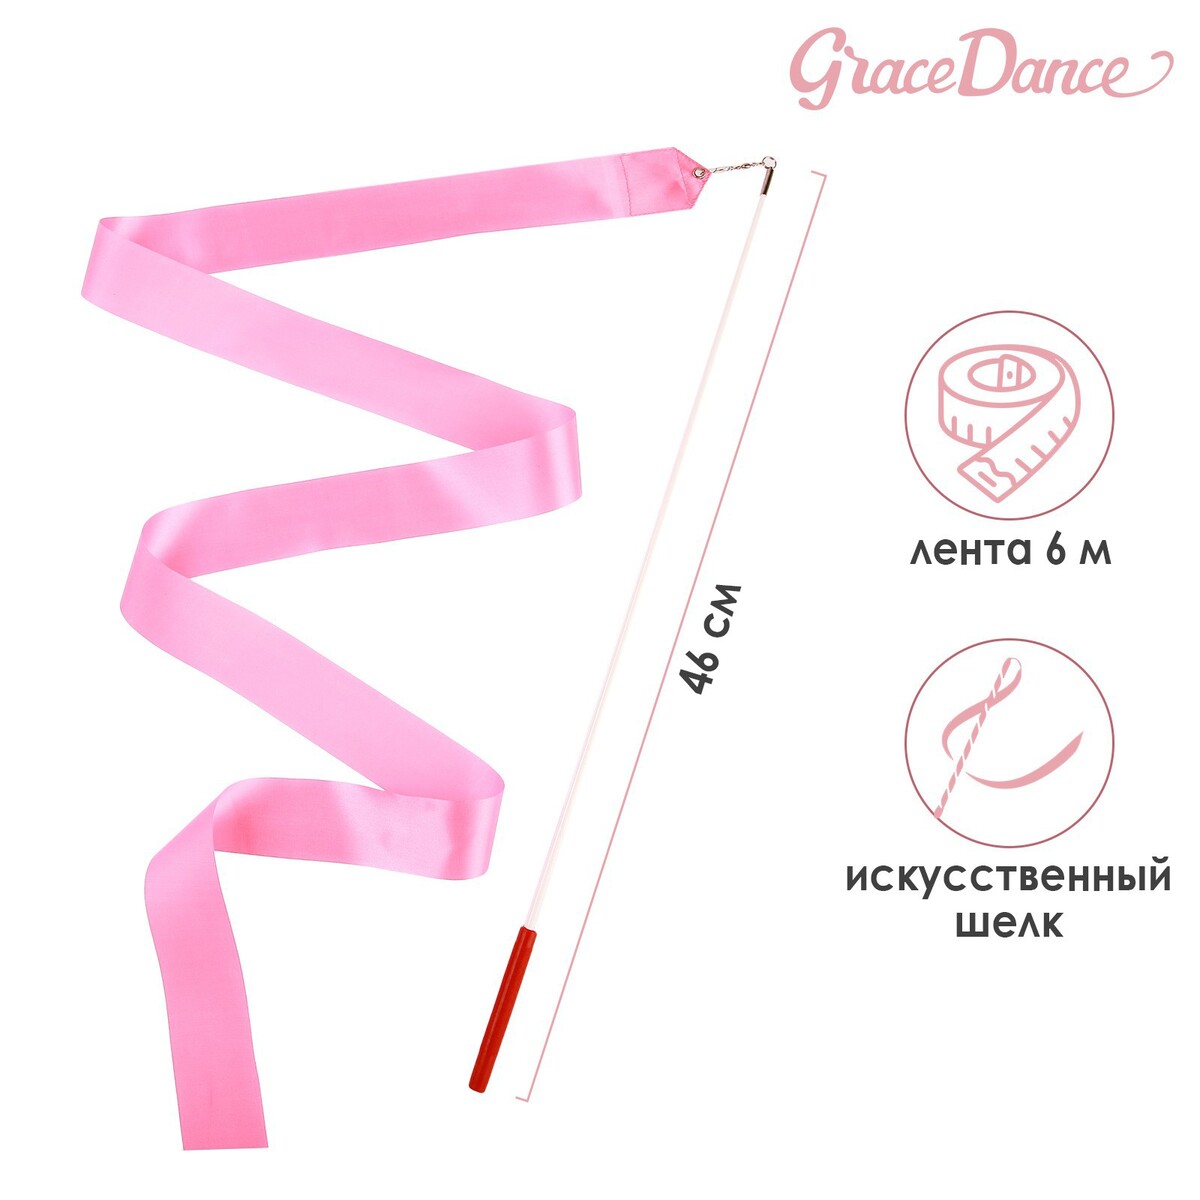 Лента для художественной гимнастики с палочкой grace dance, 6 м, цвет розовый лента фиксации rockbros для перевозки и хранения велосипедов зеленый rb 51210071002